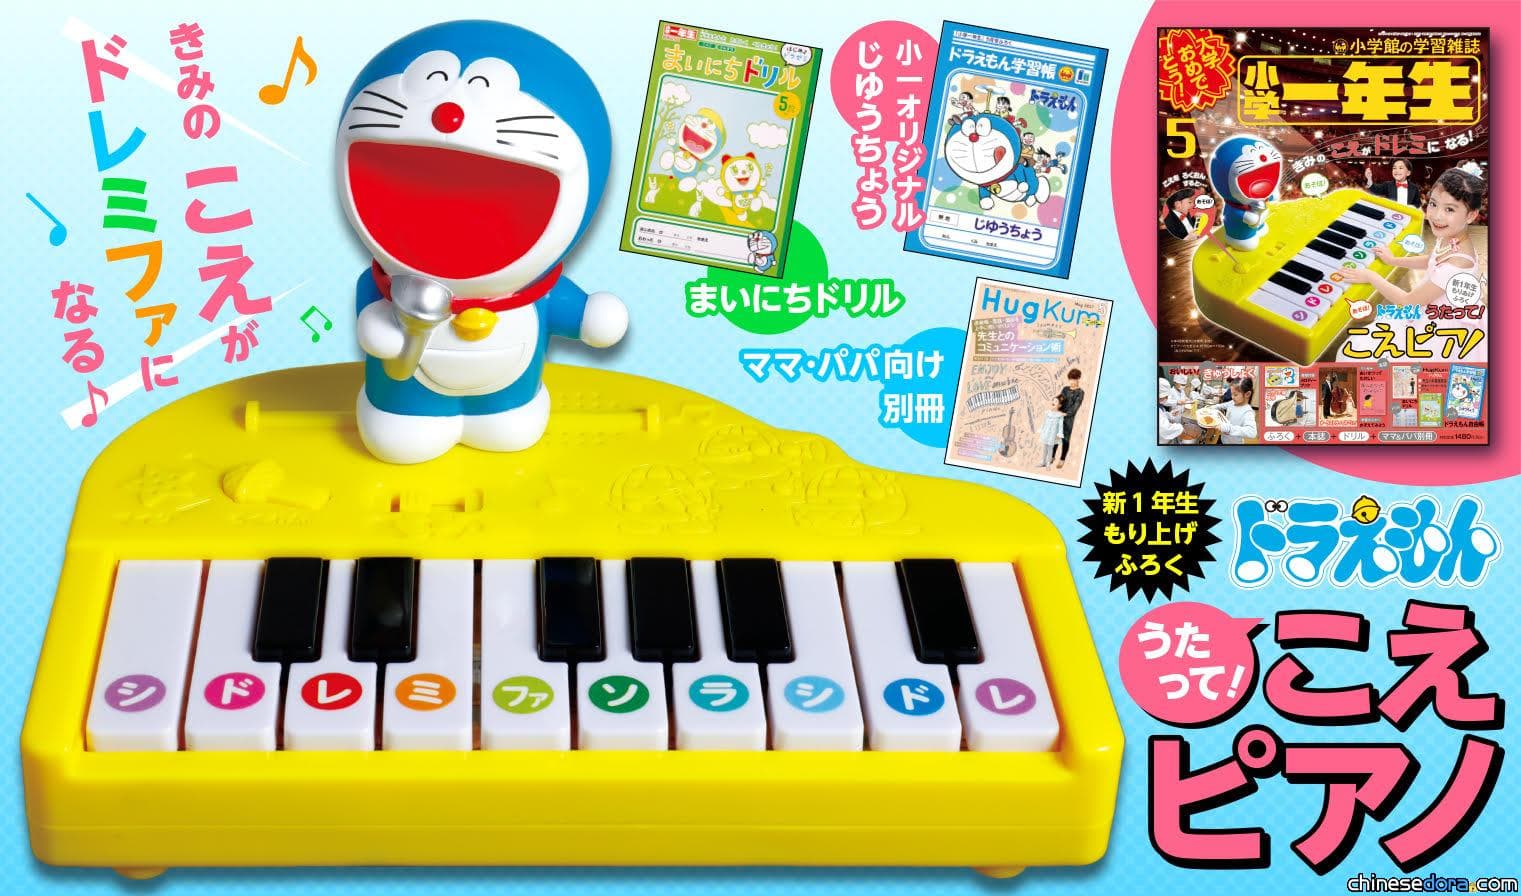 [日本] 6歲童笑不停! 《小學一年生》附錄「哆啦A夢聲音鋼琴」 聽聽你聲音的不同音階!